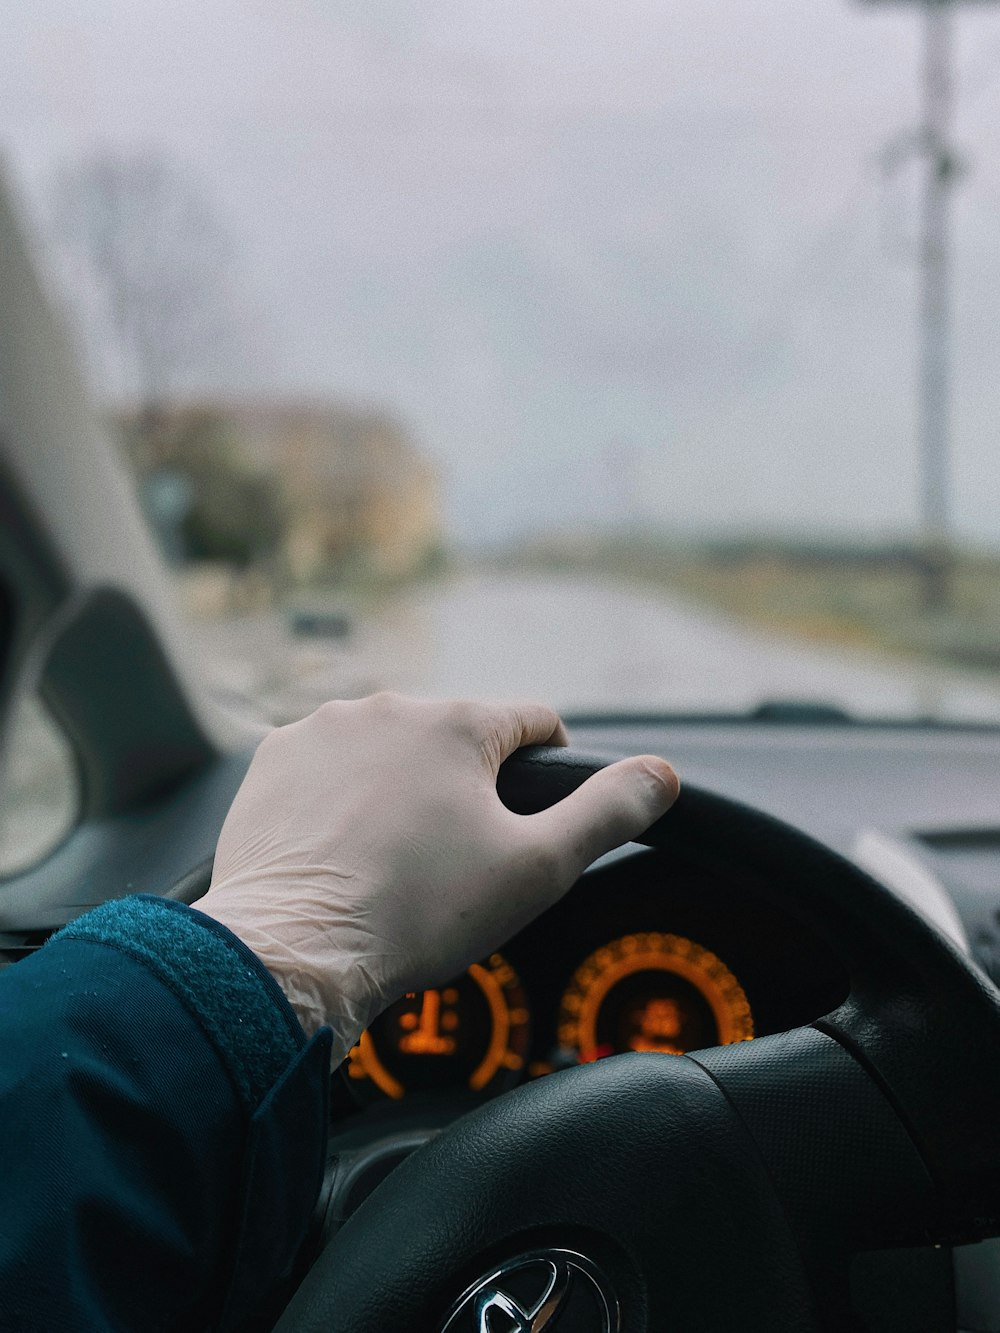 Persona con camisa azul de manga larga conduciendo un automóvil durante el día